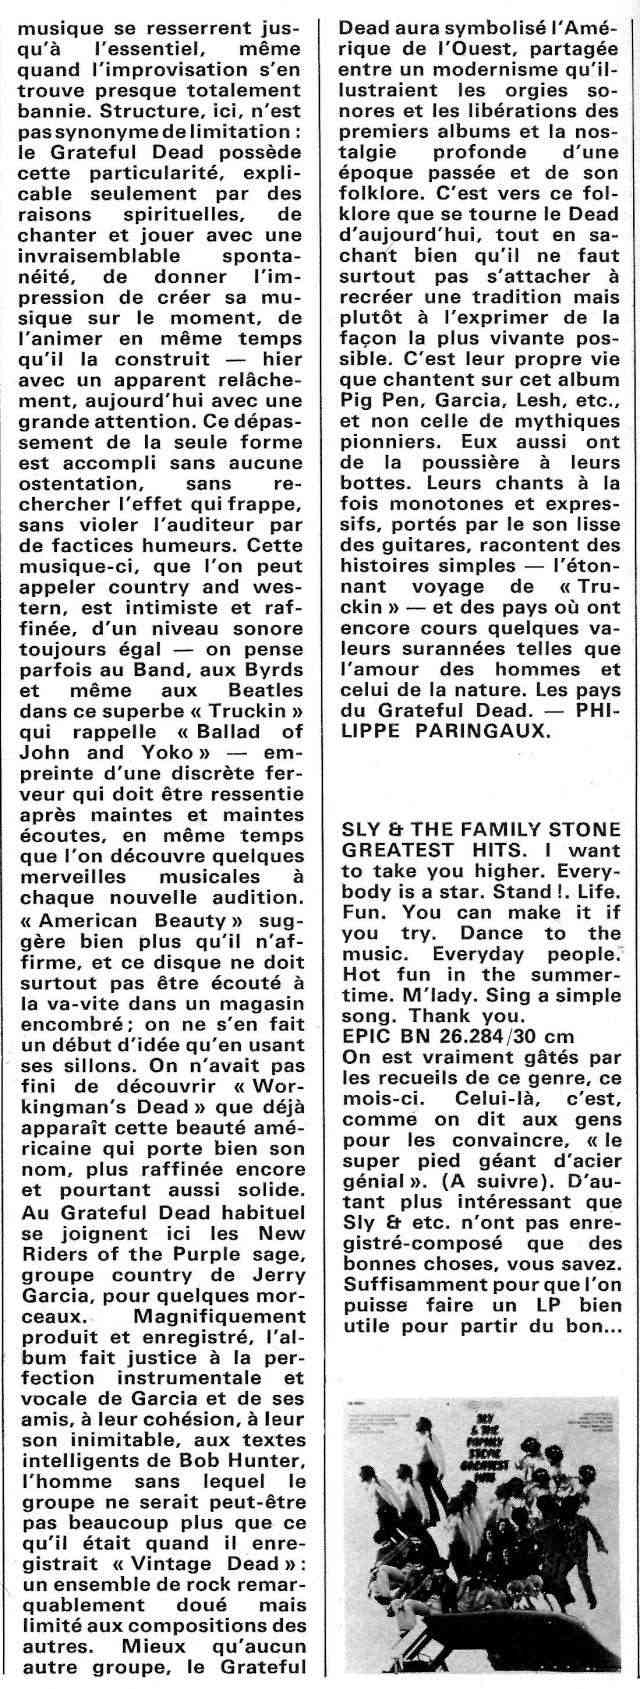 Grateful Dead - American Beauty (1970) R47-1611